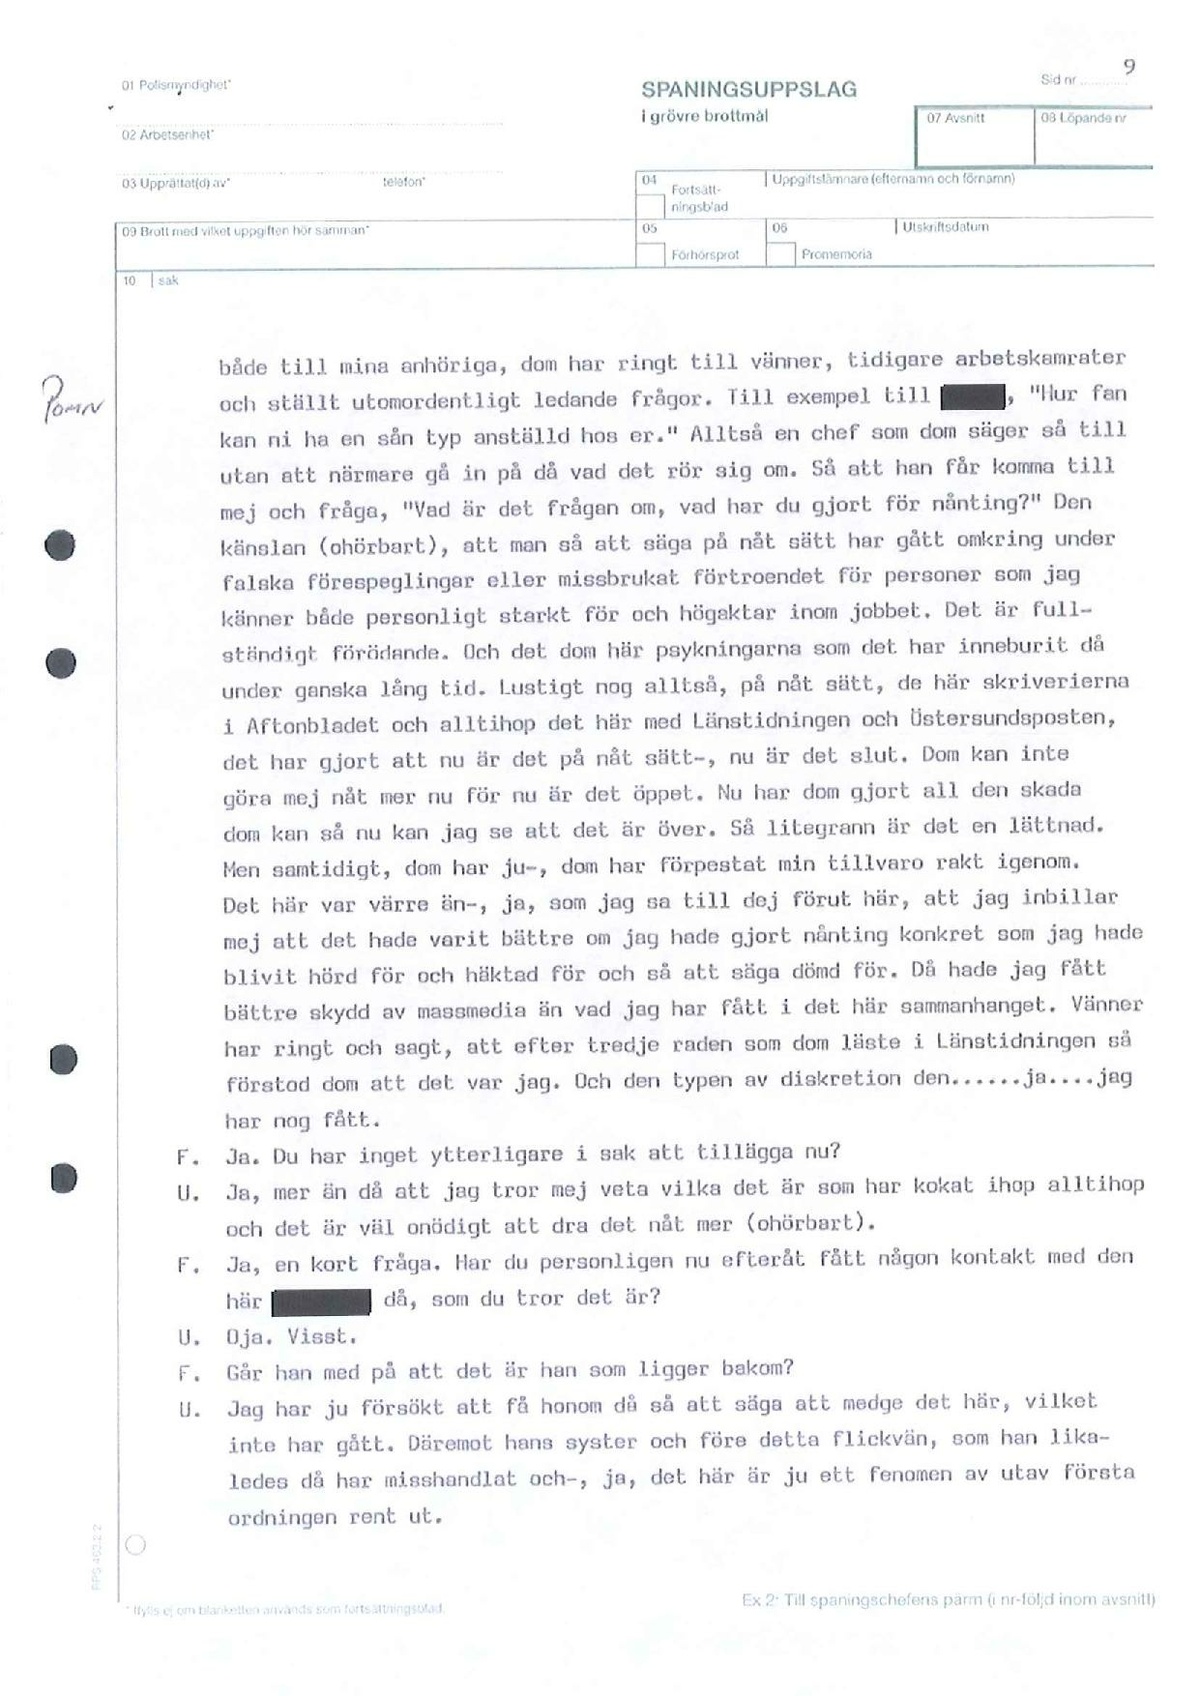 Pol-1993-09-16 D11614-01-C Utriainen-Brunflo-skytteklubb-AGAG-Magnumklubben.pdf